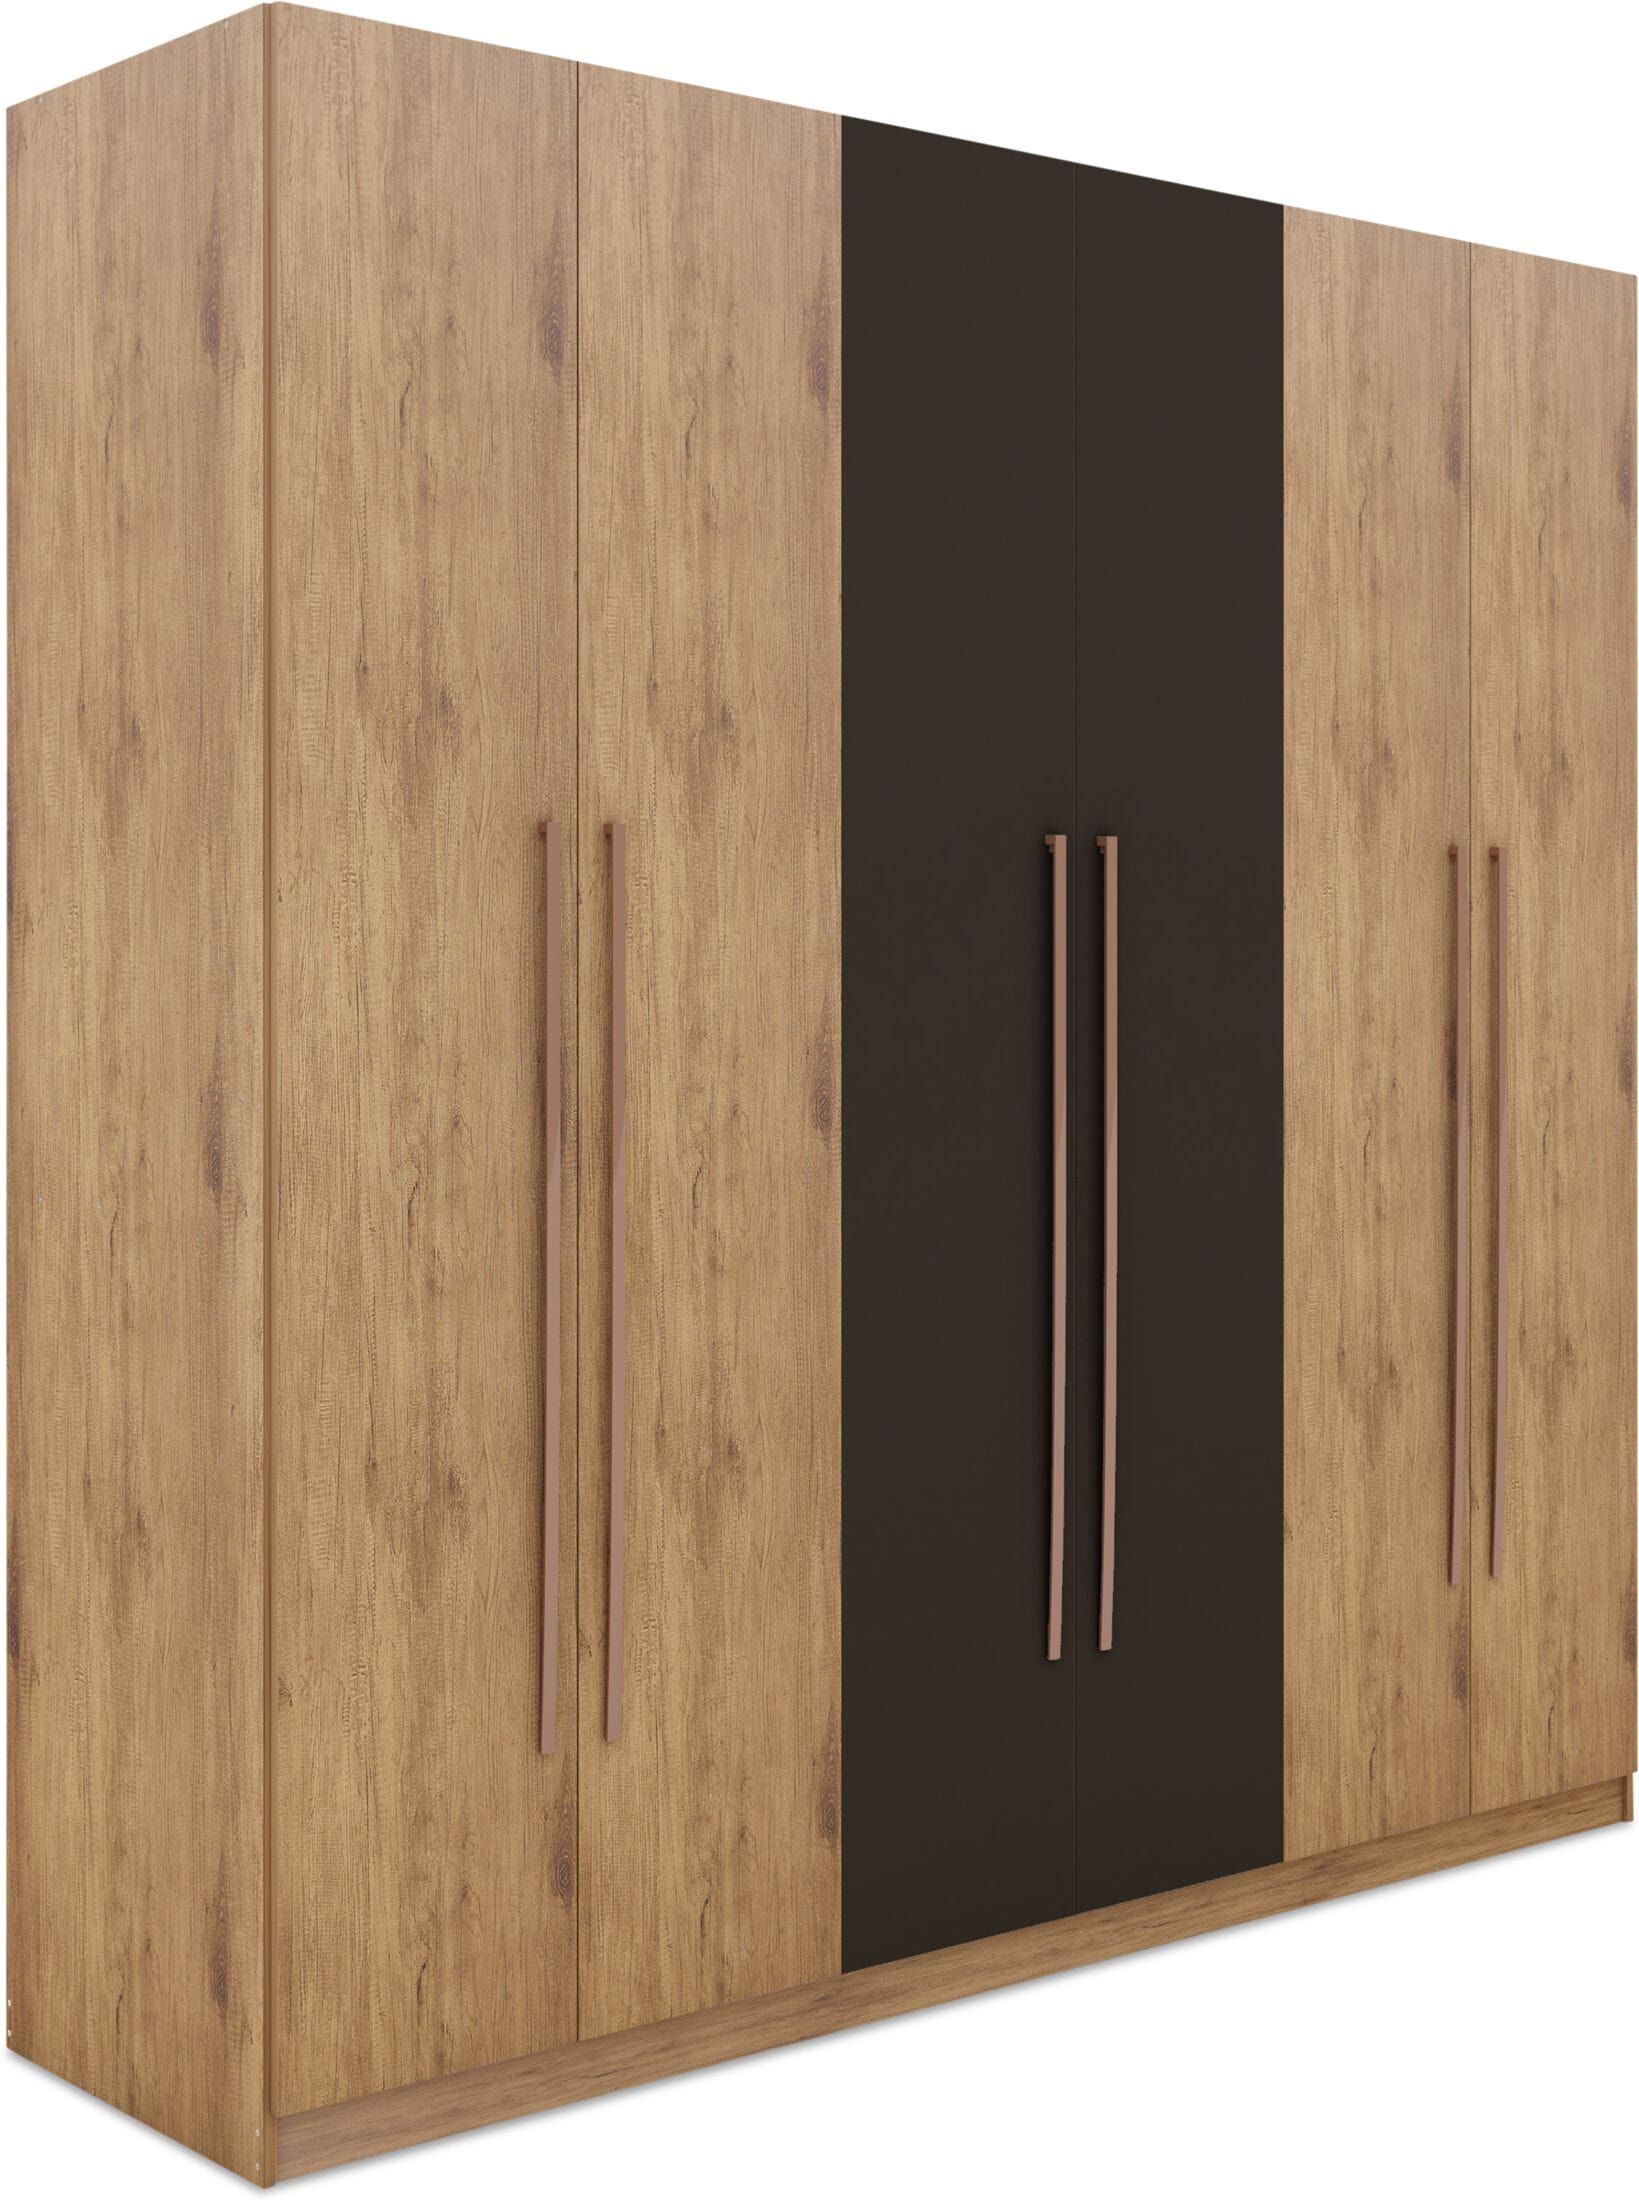 Купить шкаф в стиле лофт LOFT SH077 из металла и дерева на заказ в Москве, дизайнерские шкафы лофт Loft Style